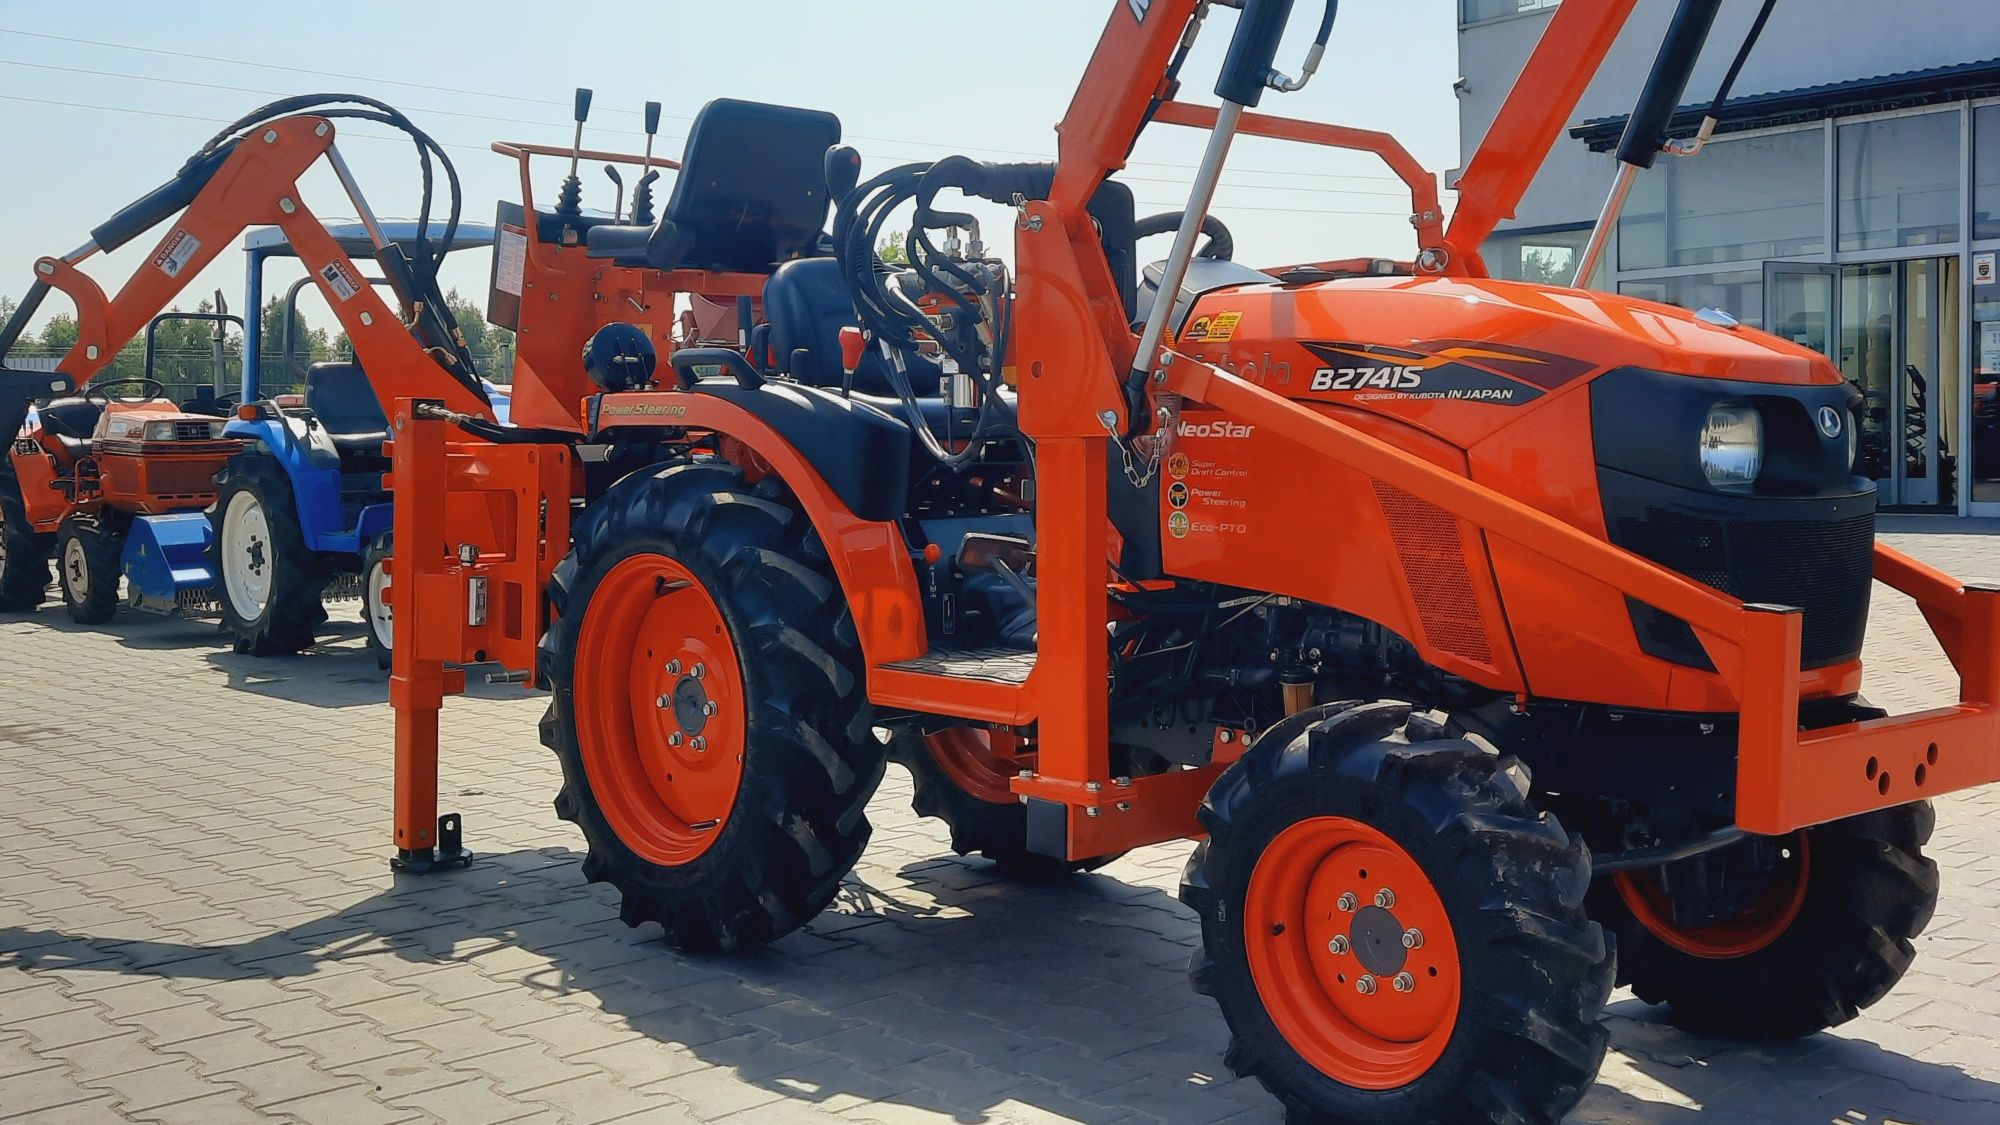 Kubota B2741S, Dofinansowanie z UE,Dotacja mini traktorek,ciągnik